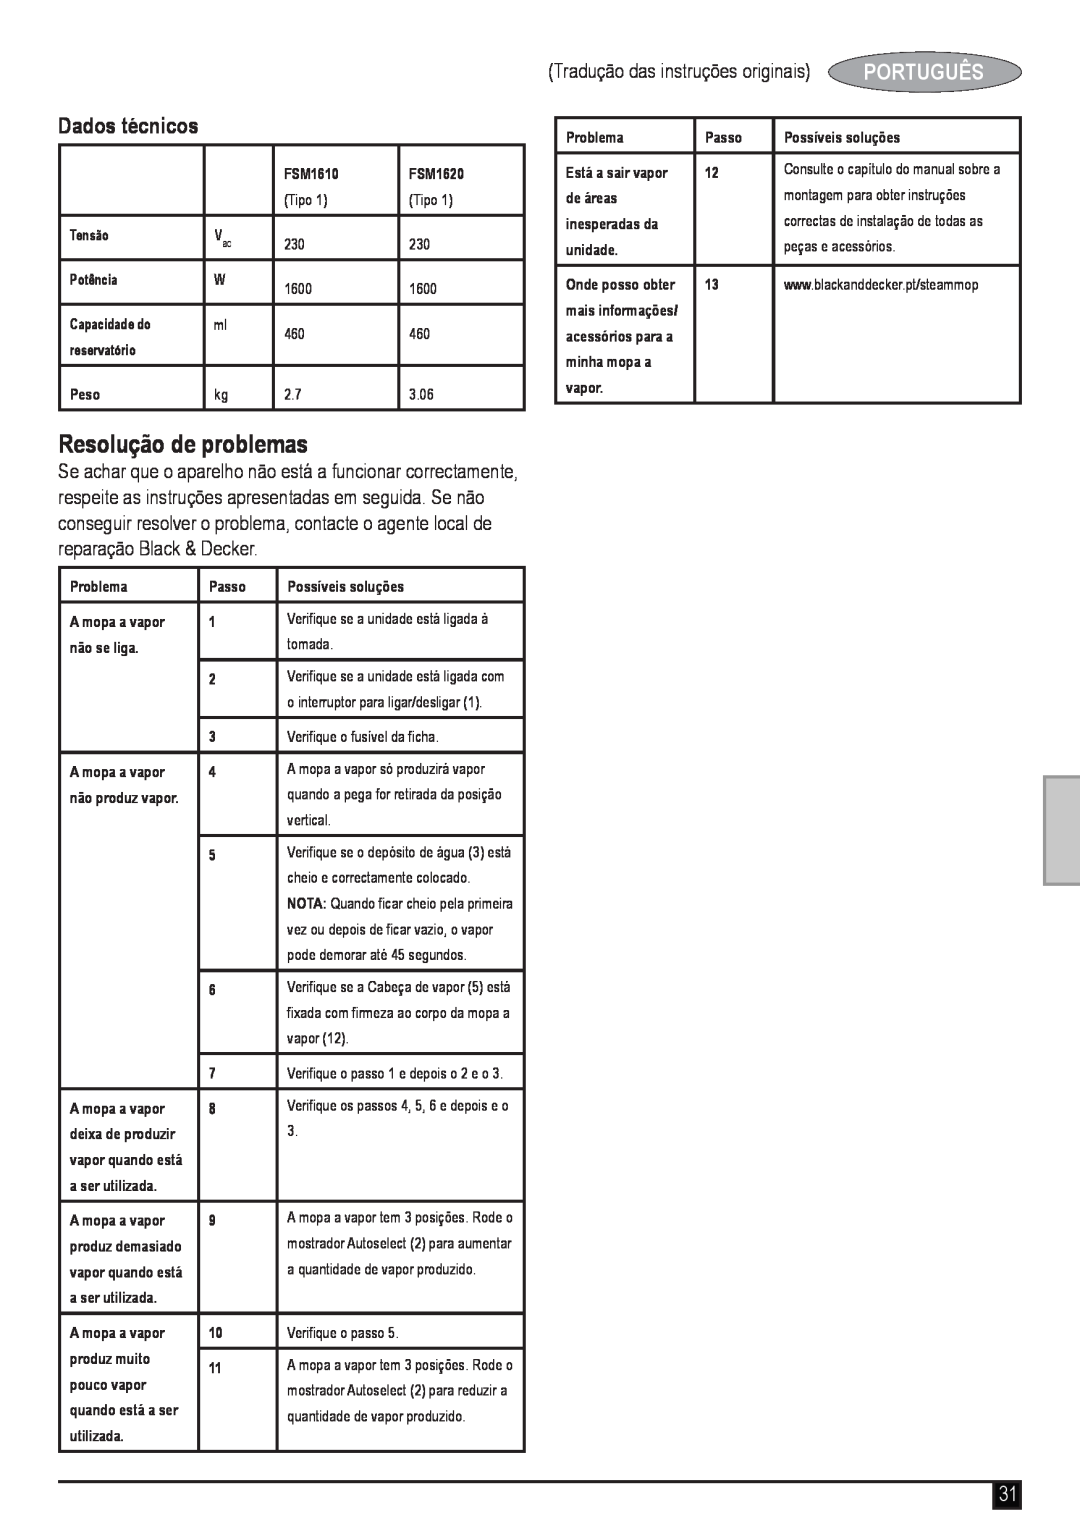 Black & Decker FSM1620 manual Resolução de problemas, Dados técnicos, Tradução das instruções originais, Português 